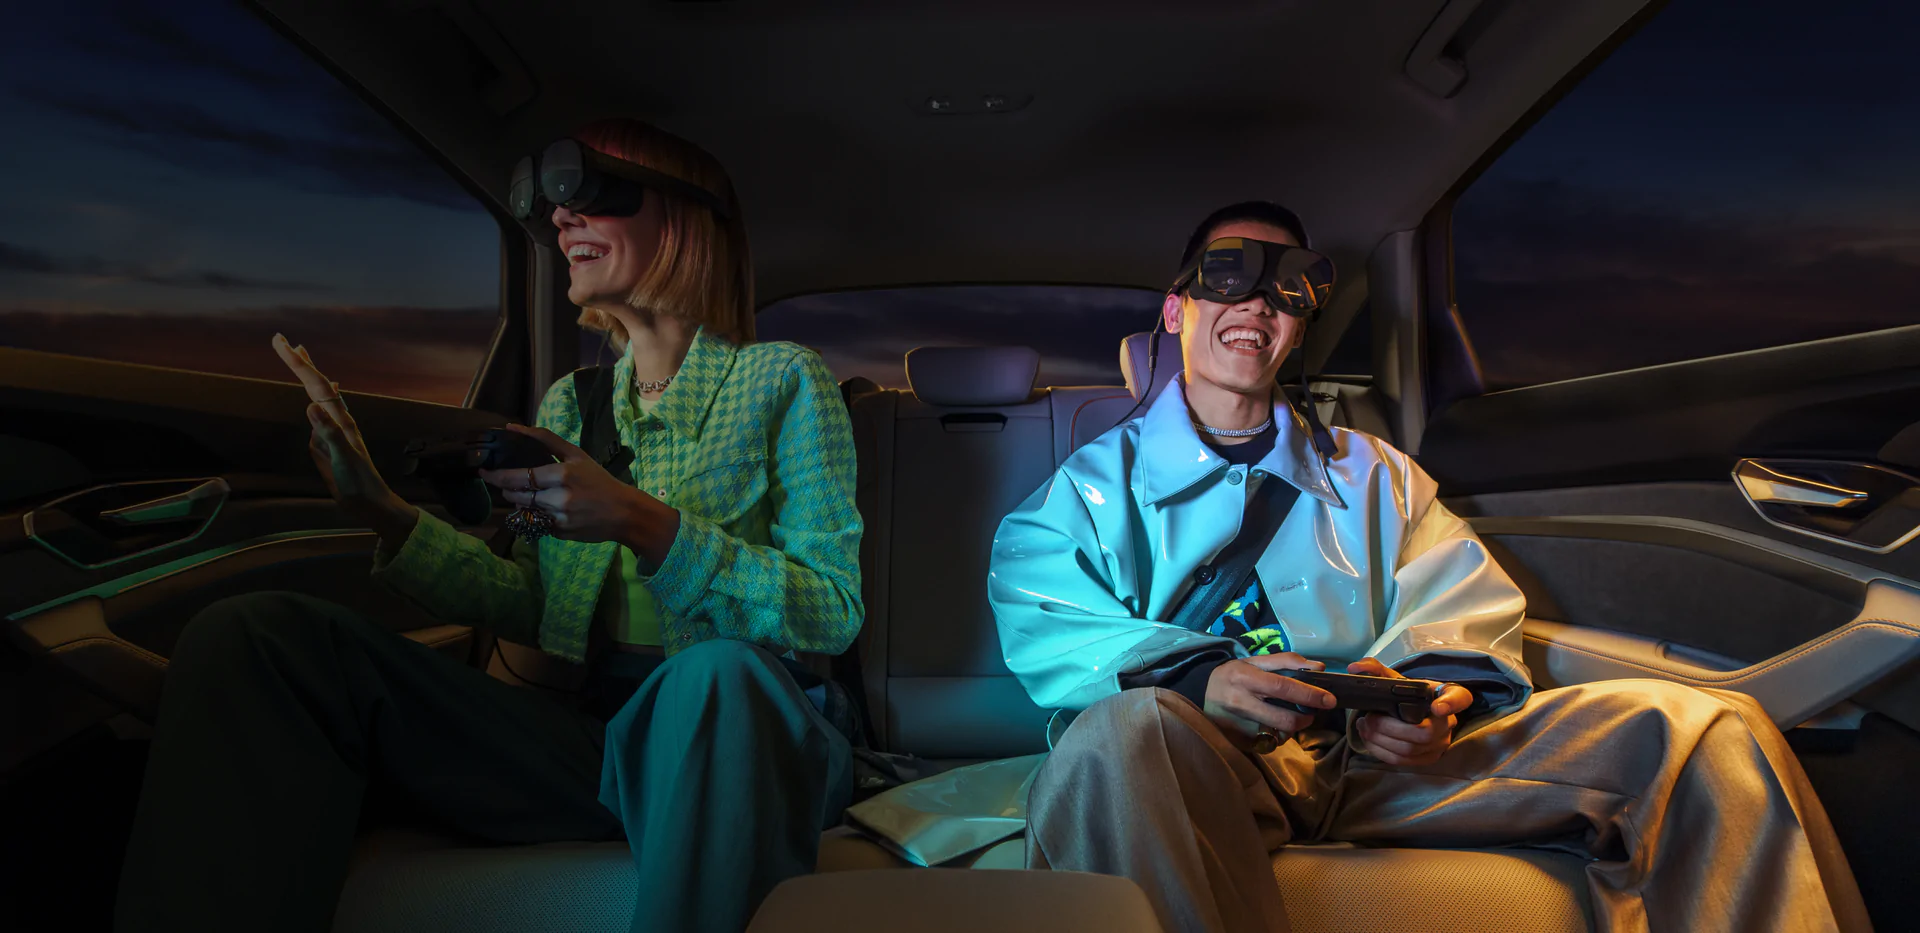 車の中でVR体験、フロントガラスに設置する小型デバイス「holoride retrofit」を発表